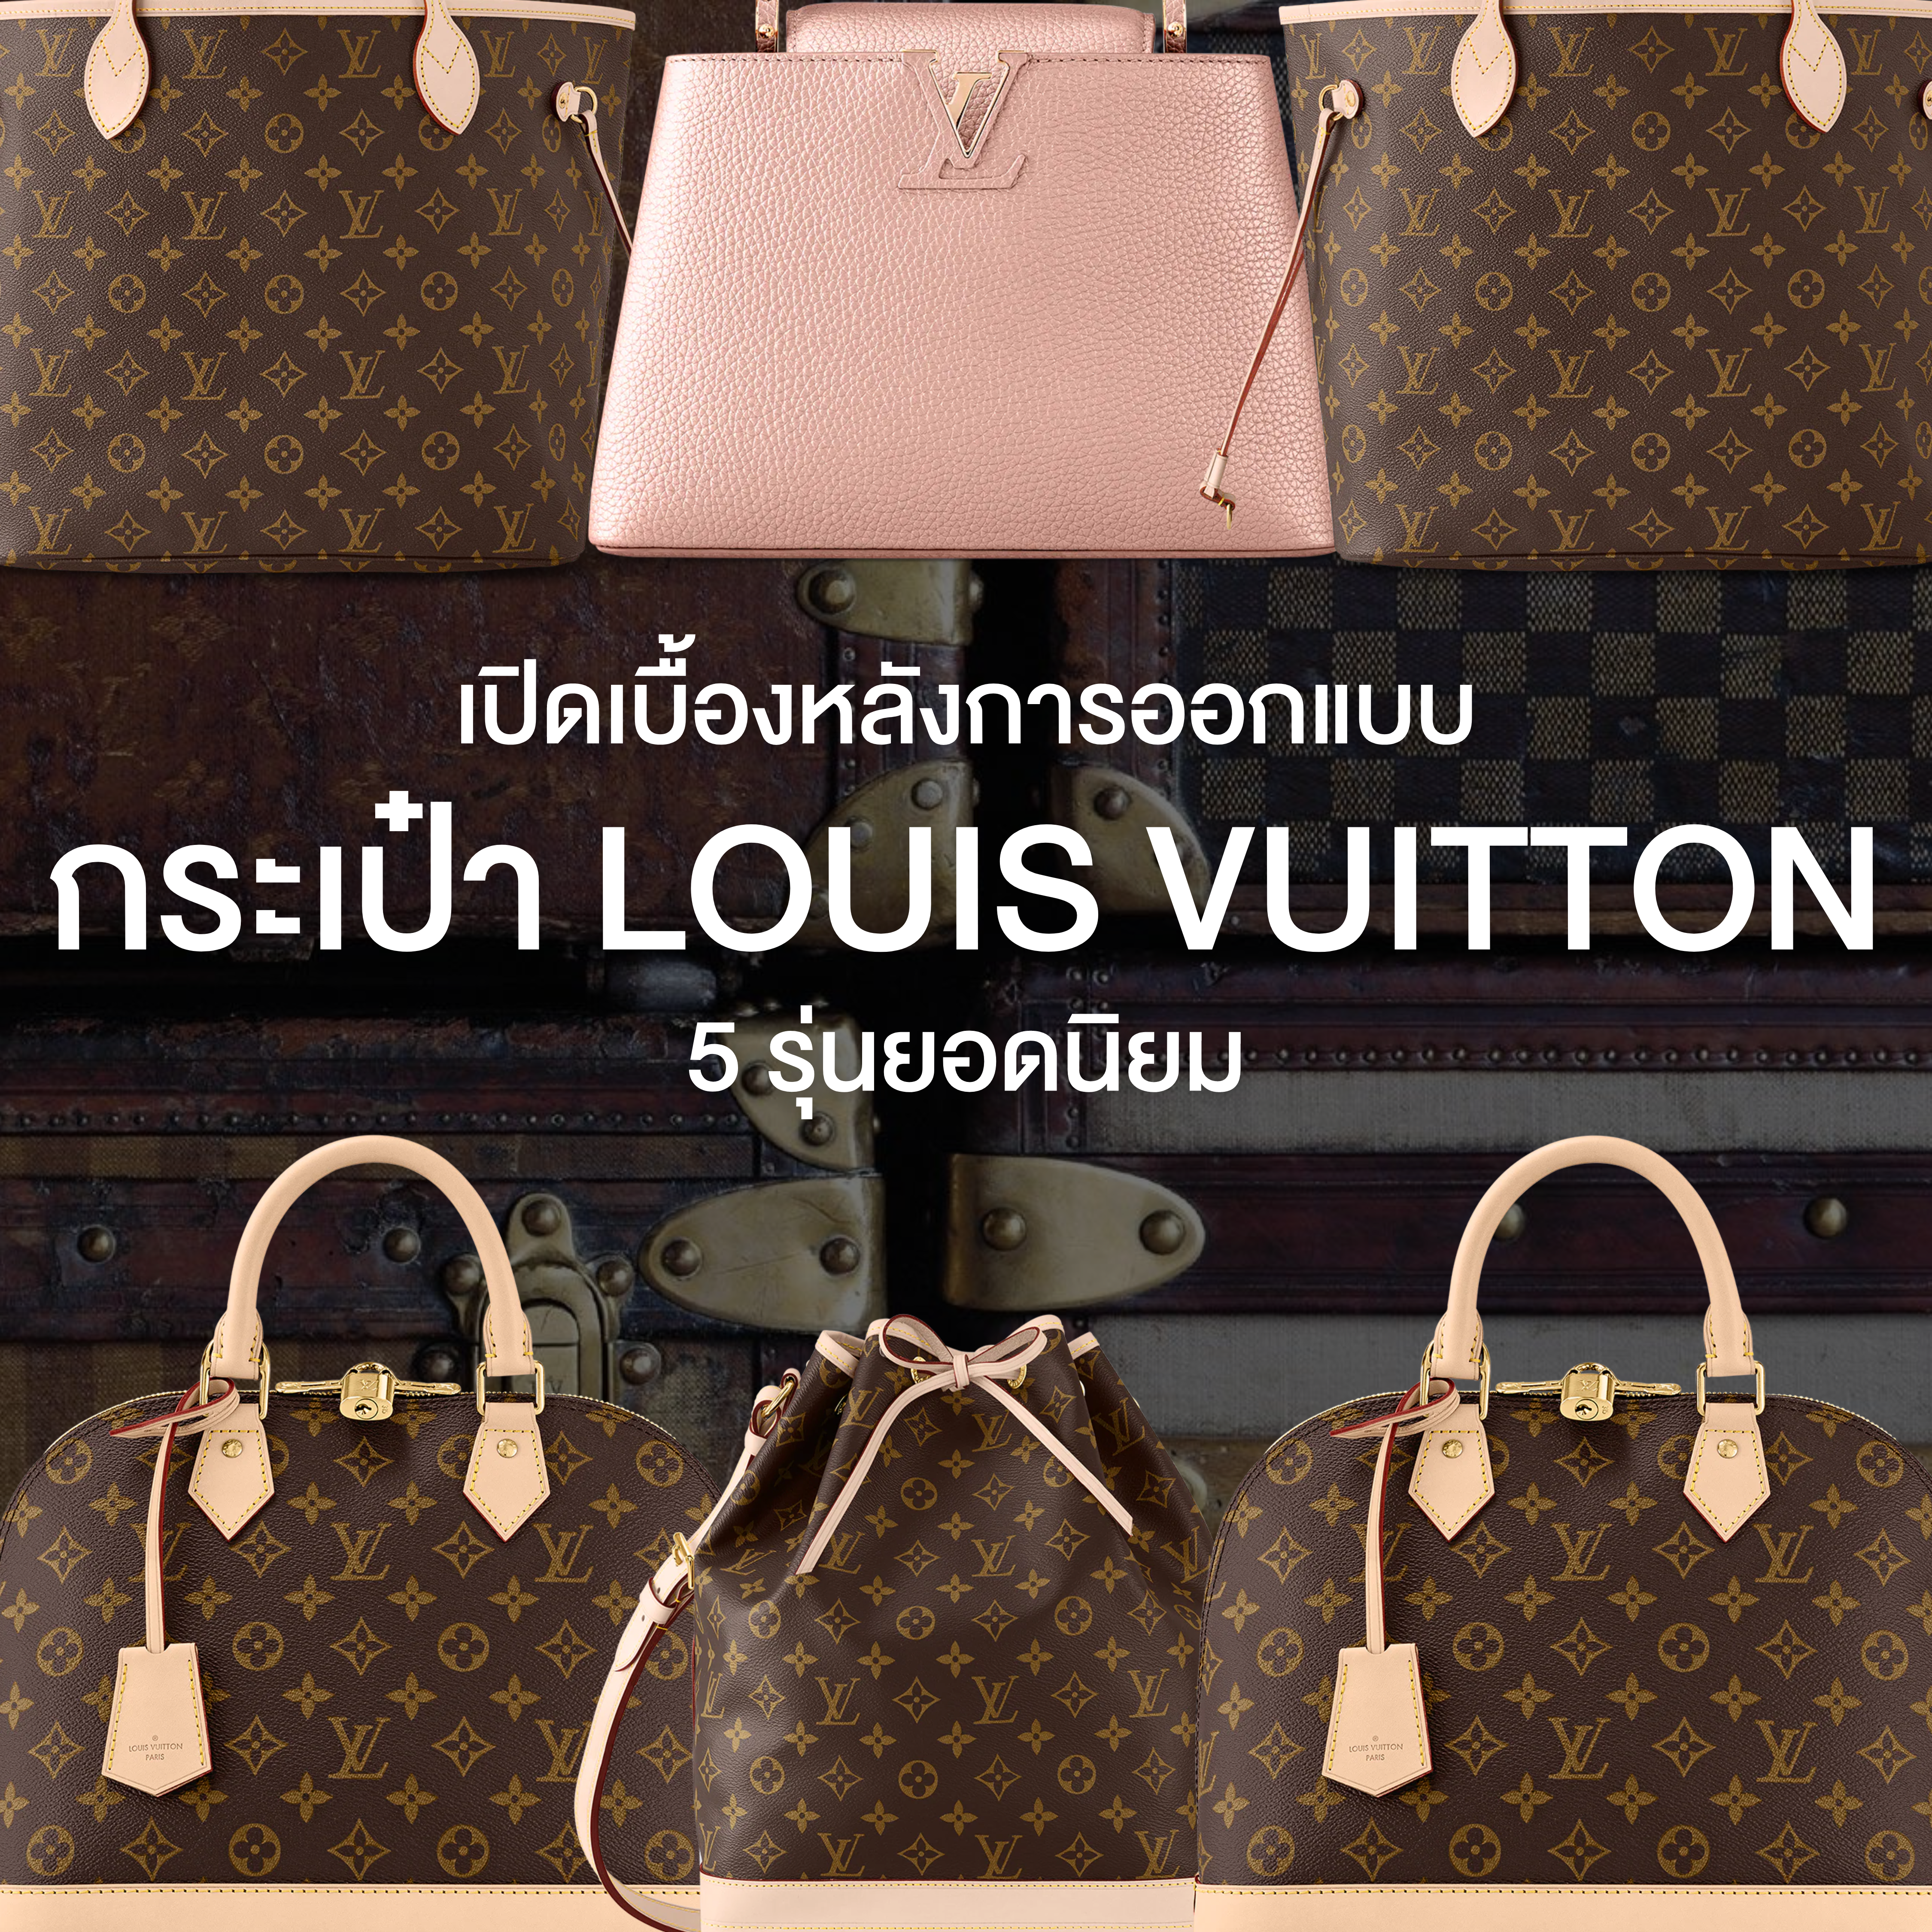 เปิดเบื้องหลังการออกแบบ 5 รุ่น กระเป๋า Louis Vuitton